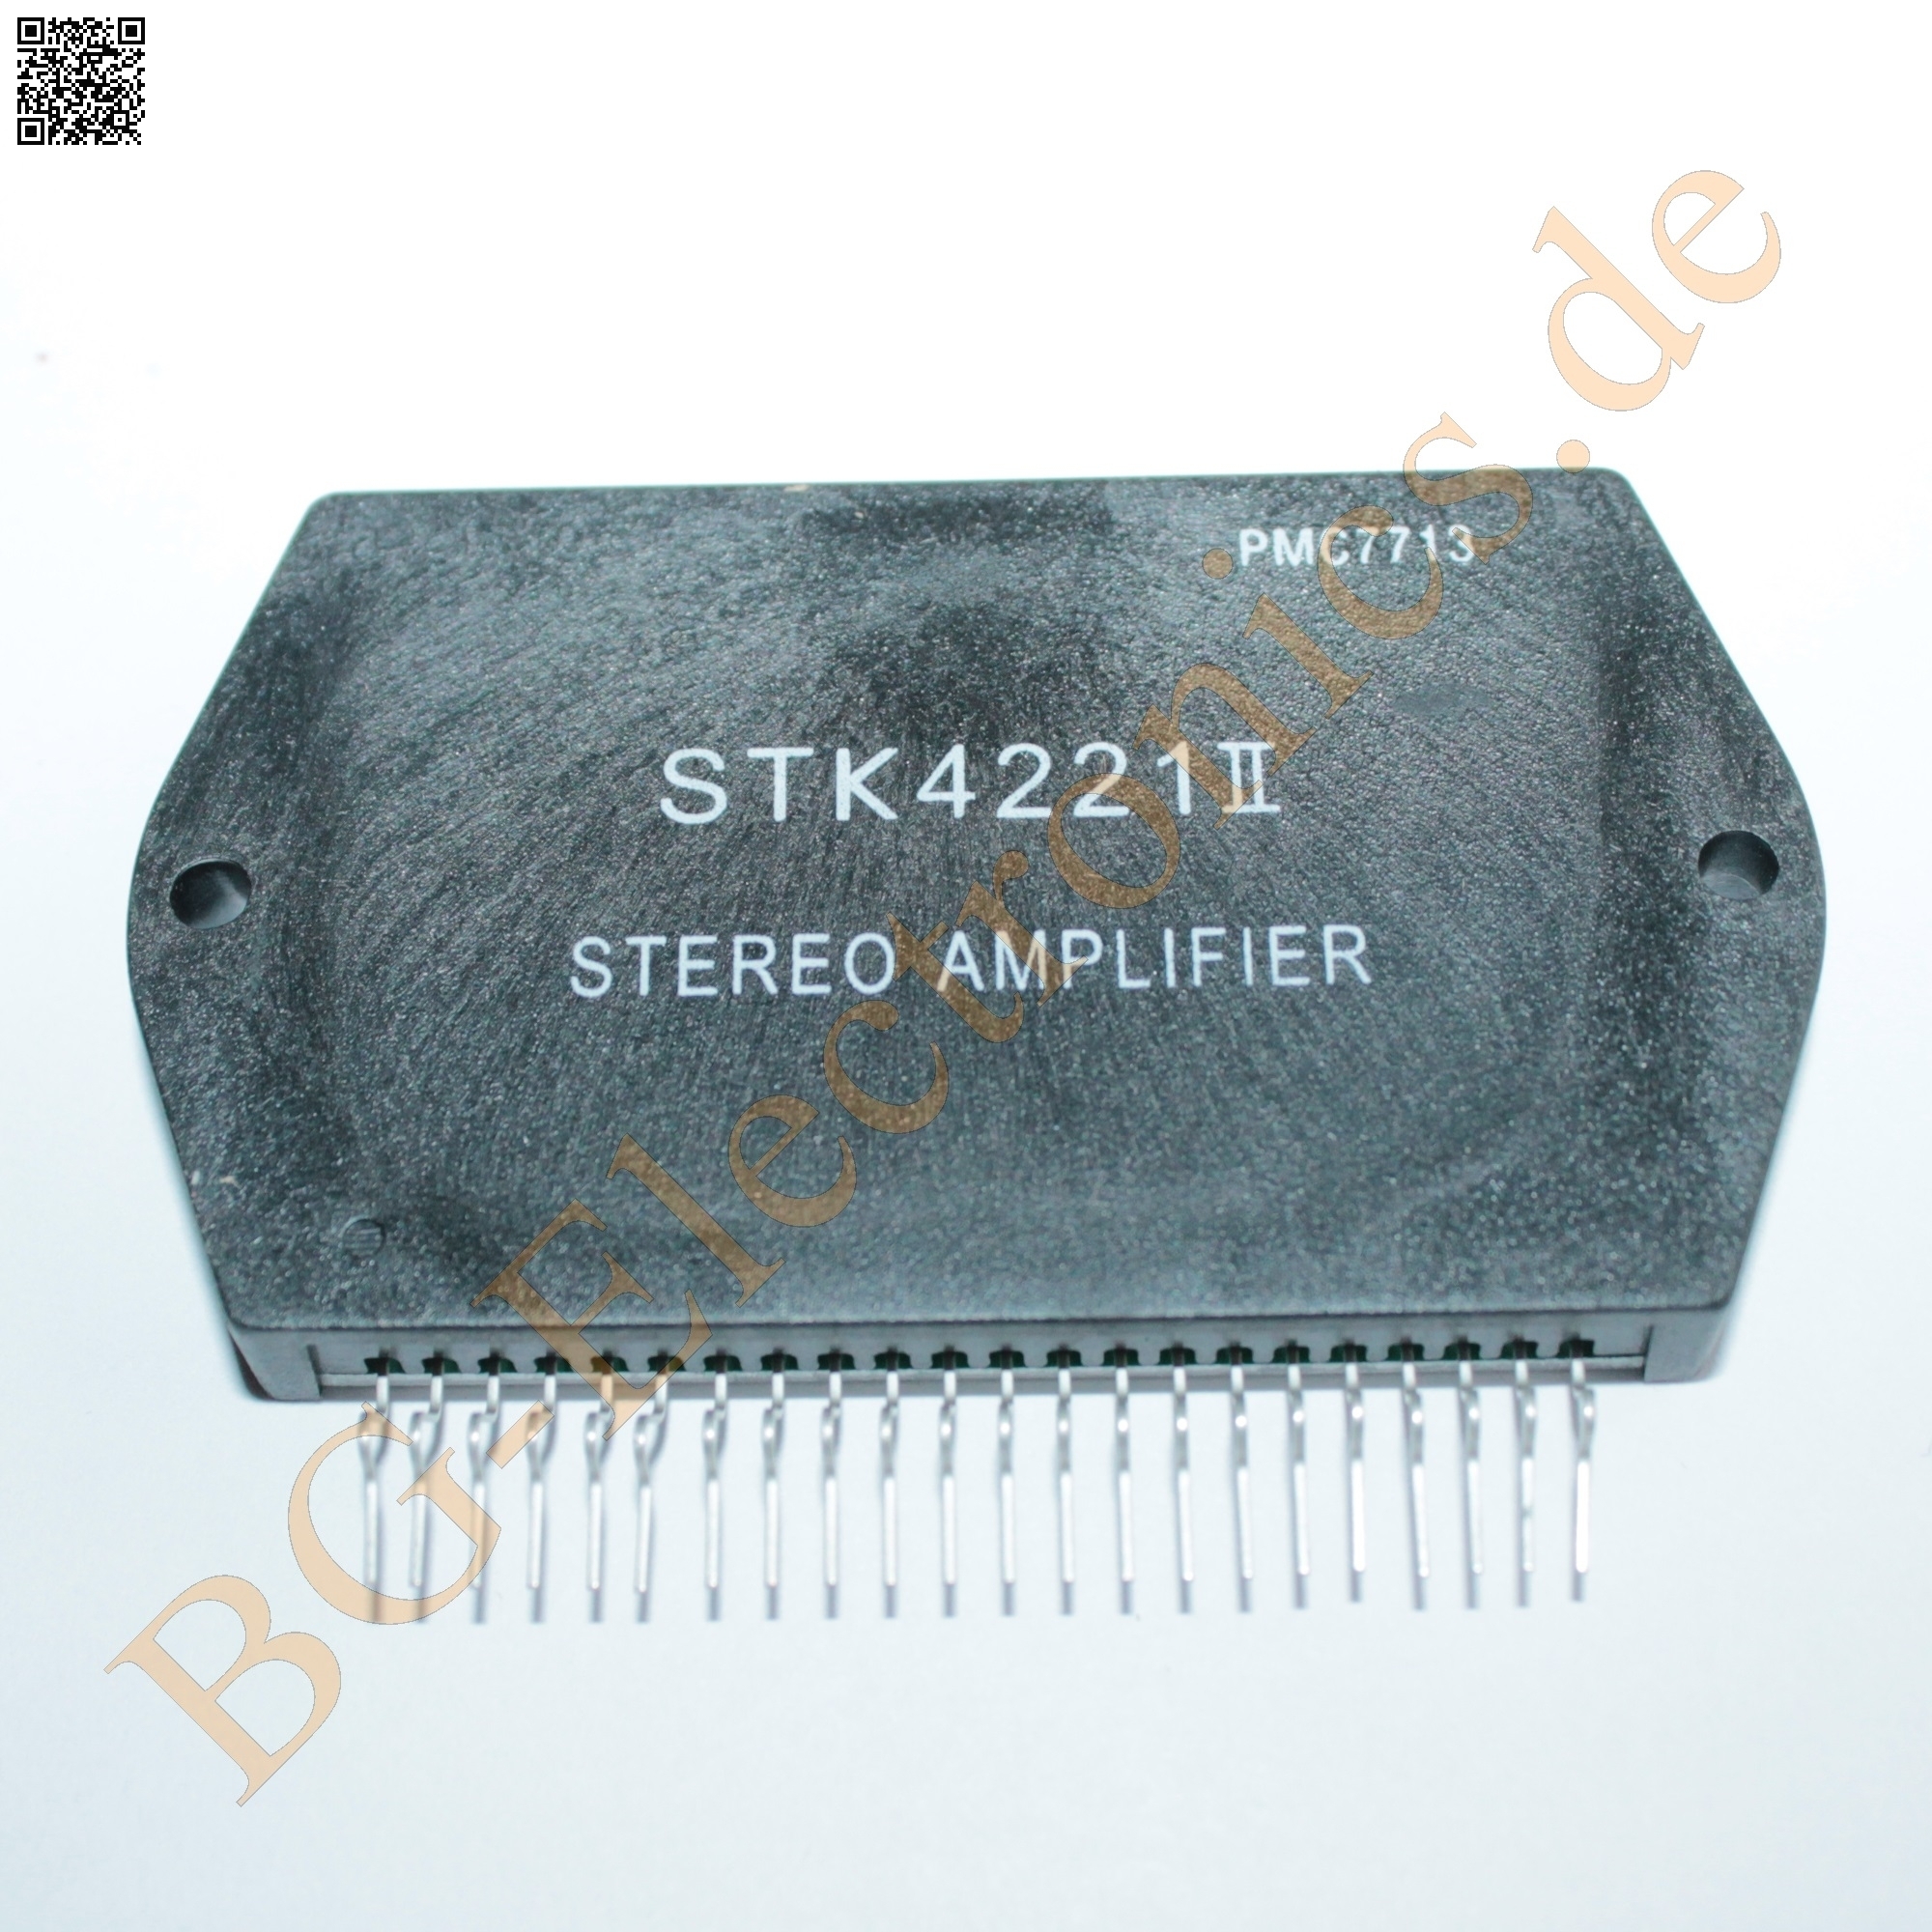 STK4221 II